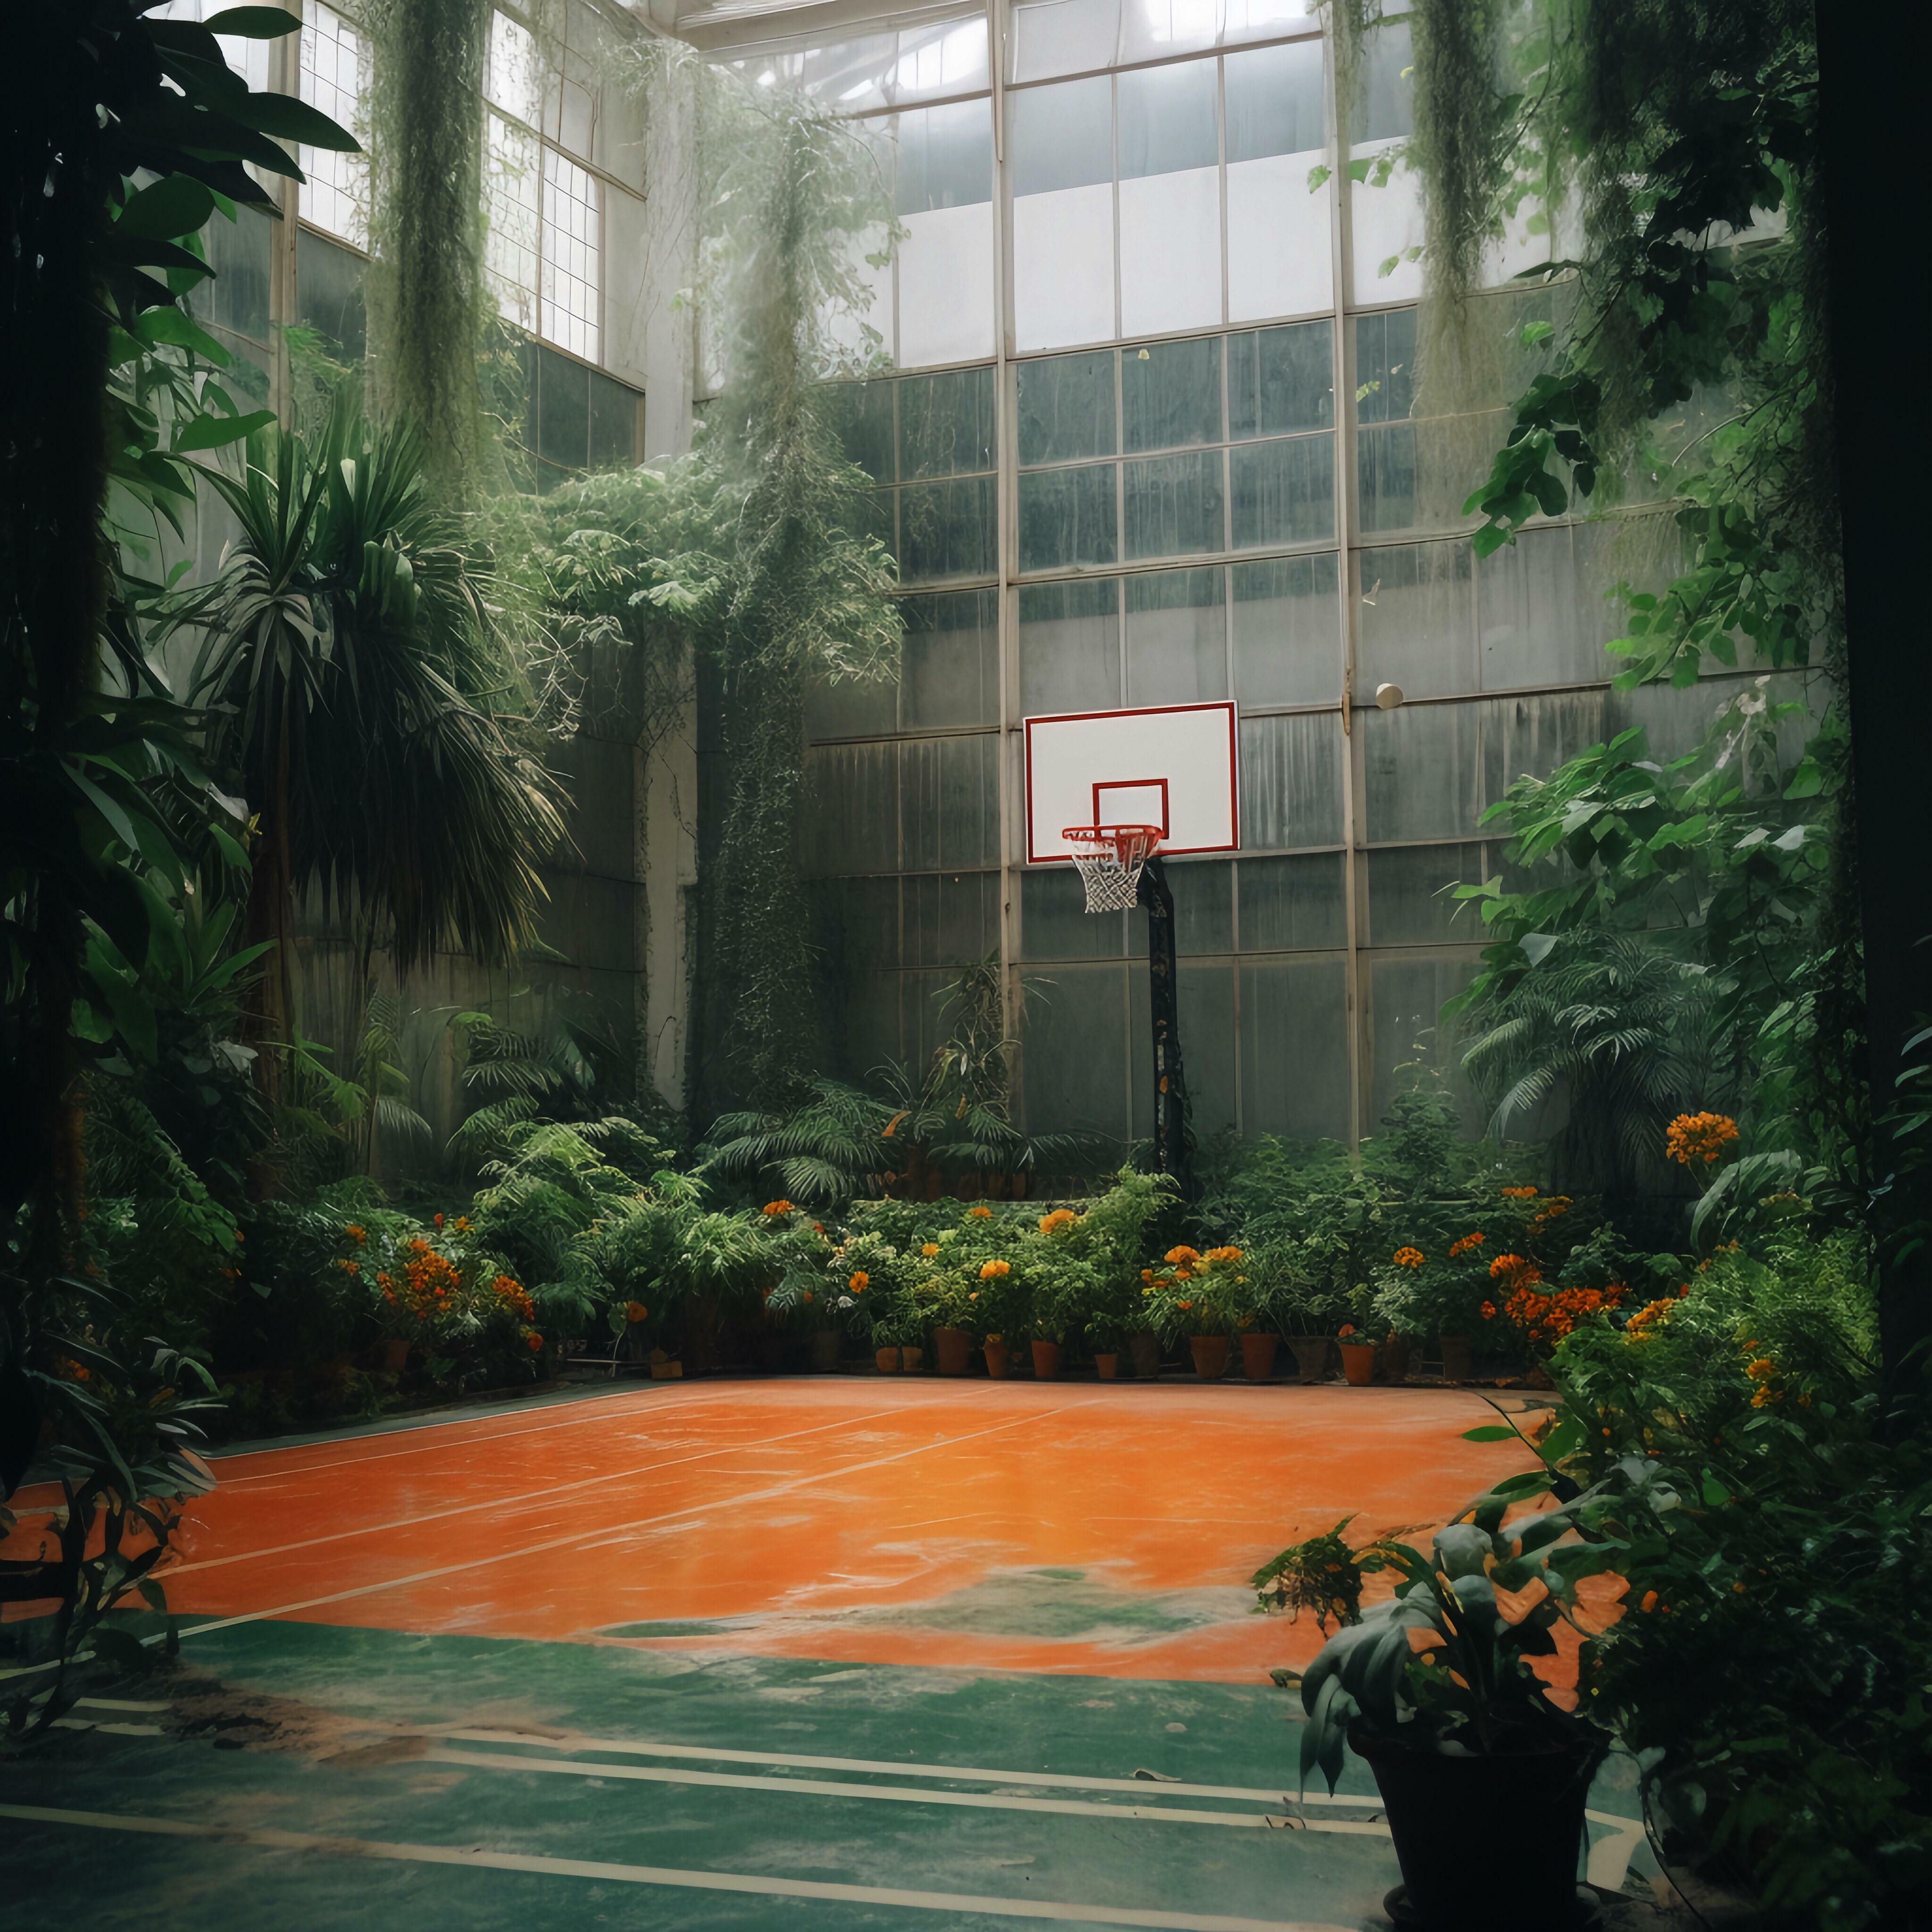 Ce terrain de basket